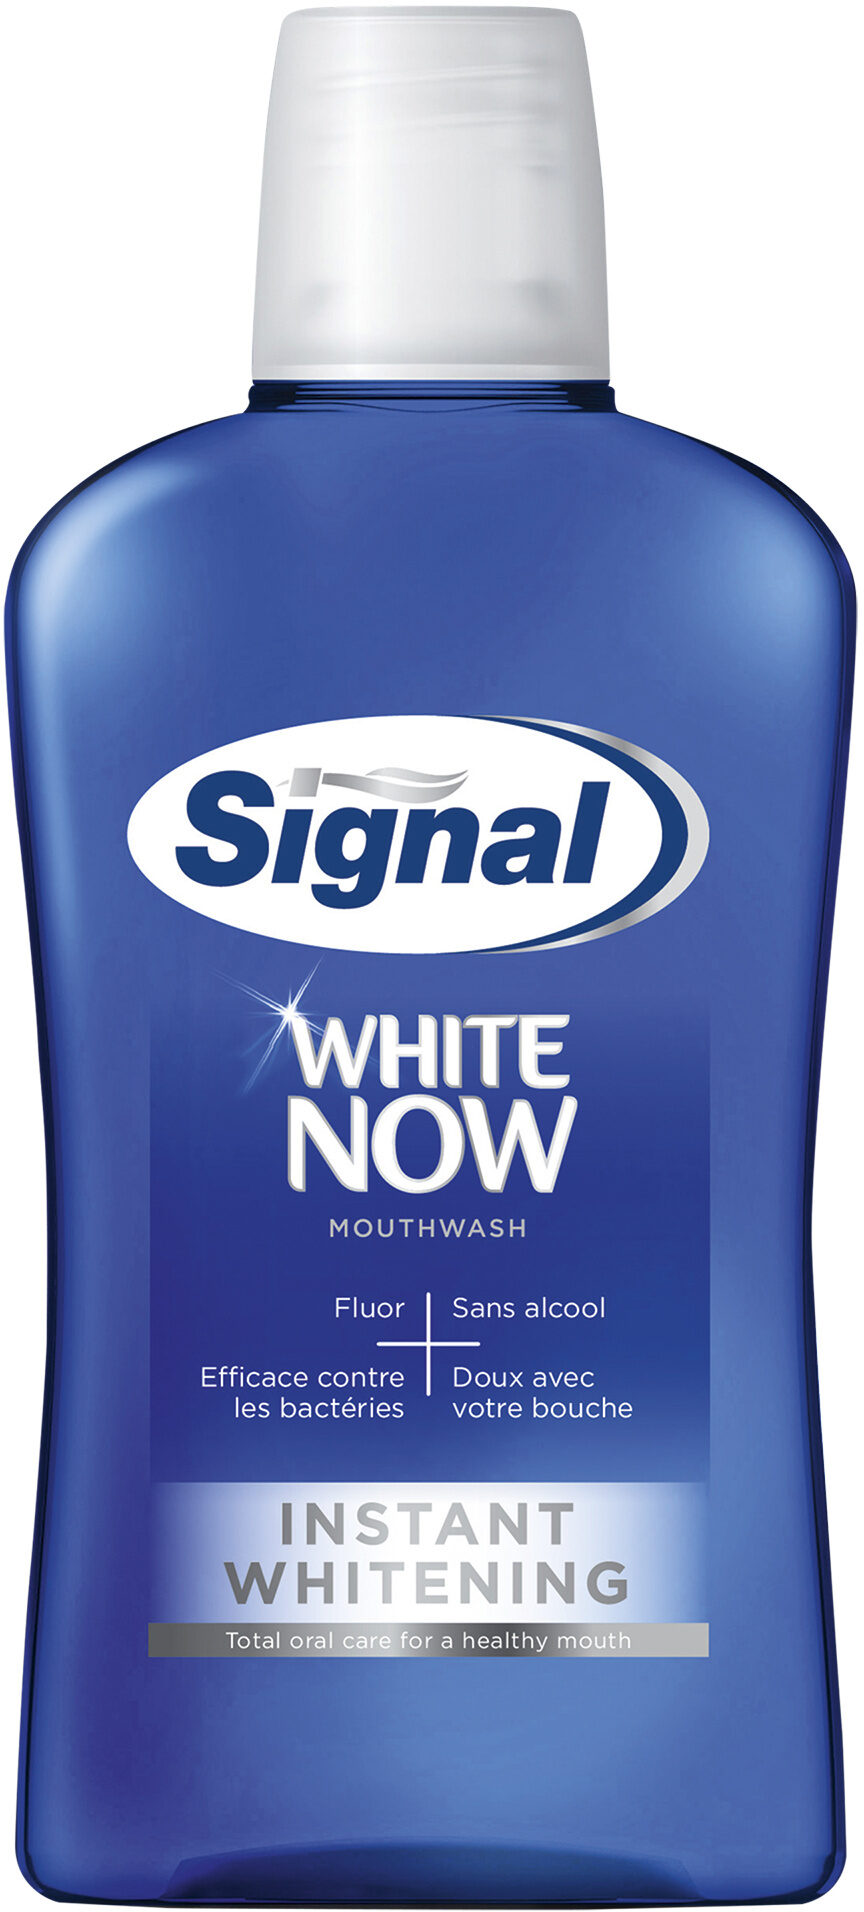 SIGNAL Bain de Bouche Antibactérien White Now 500ml - Produit - fr